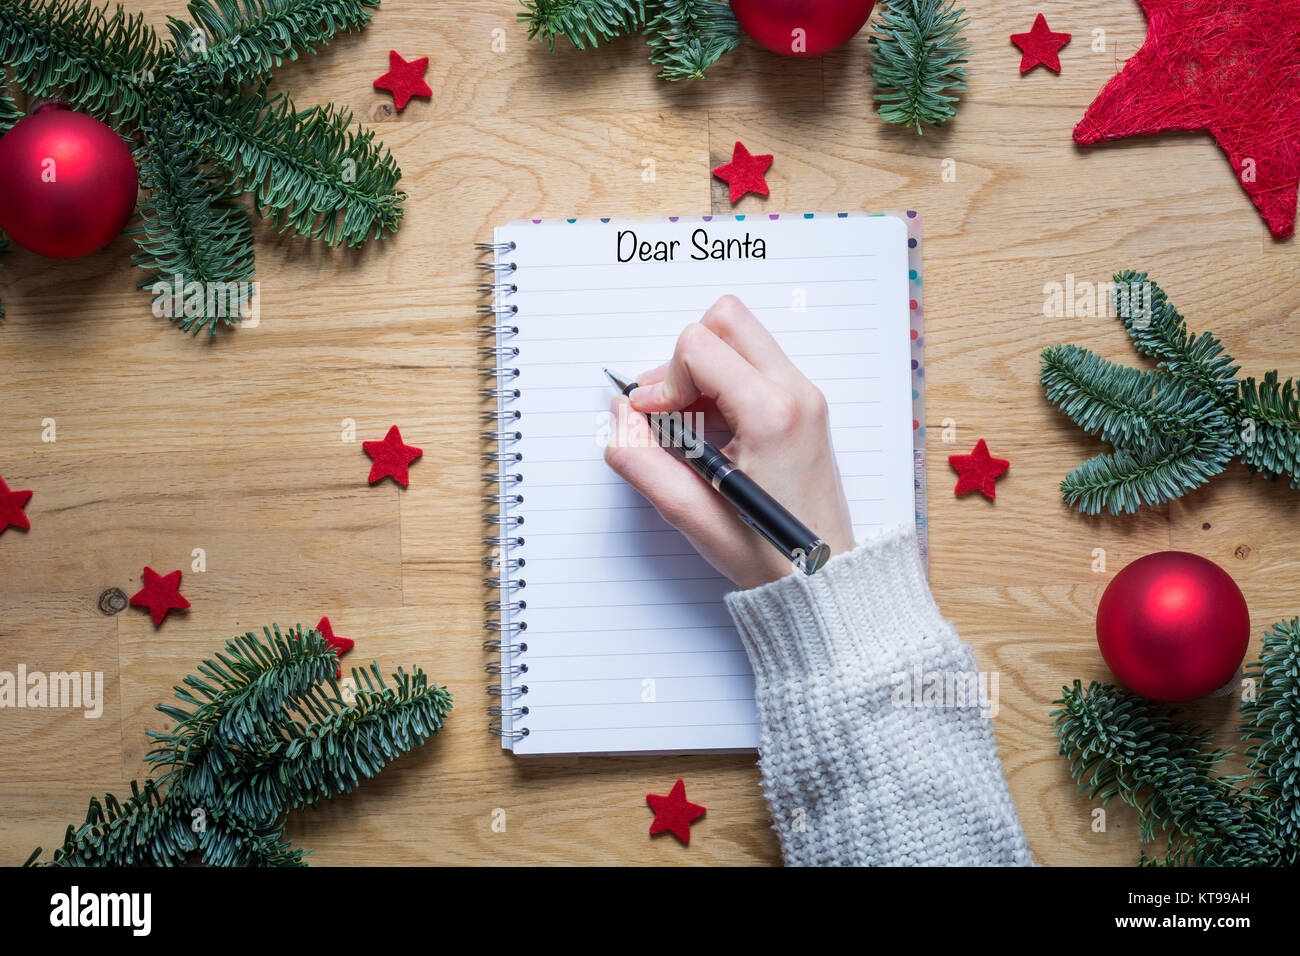 Cher Père Noël écrit sur un bloc-notes avec des décorations de Noël et branches de sapin sur une table en bois d'en haut Banque D'Images